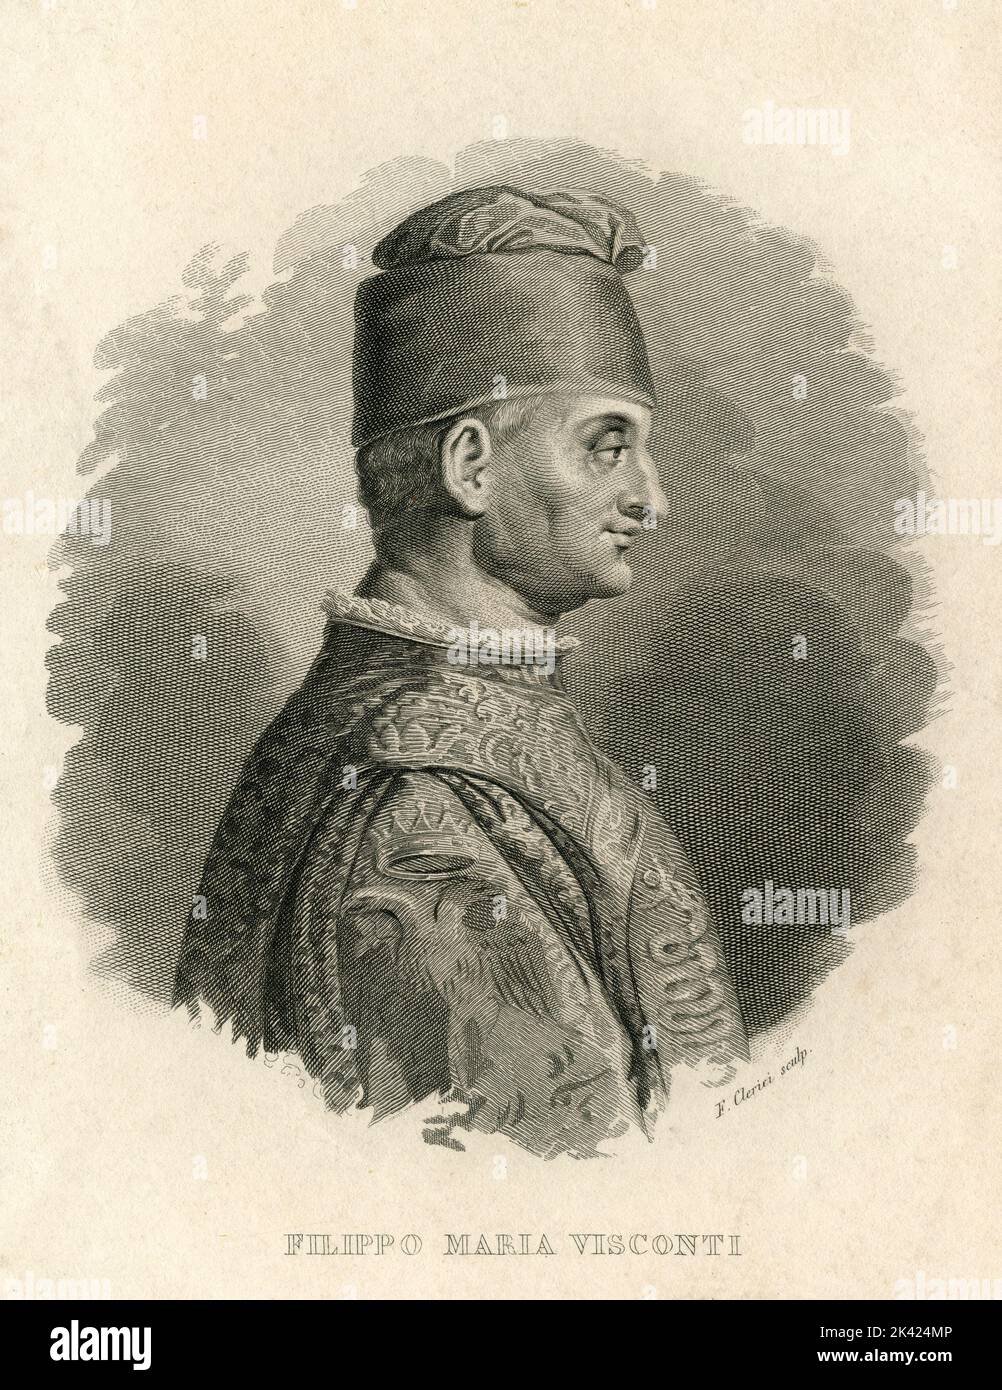 Ritratto del nobile italiano Filippo Maria Visconti, ultimo duca di Milano, 1800 ca. Foto Stock